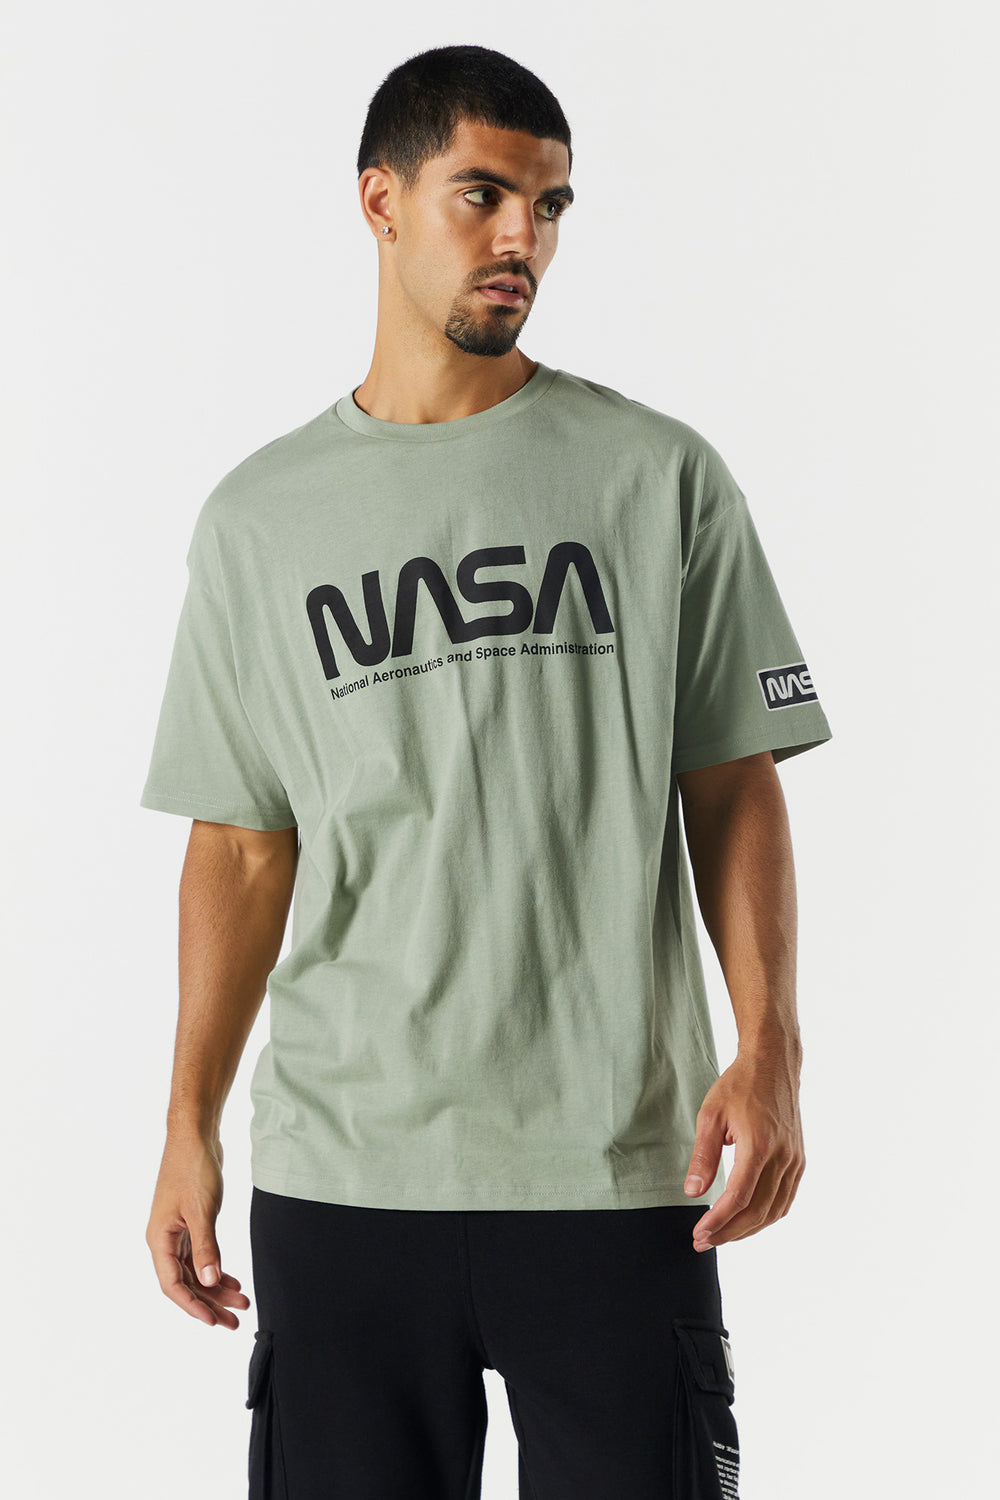 NASA Graphic T-Shirt NASA Graphic T-Shirt 1